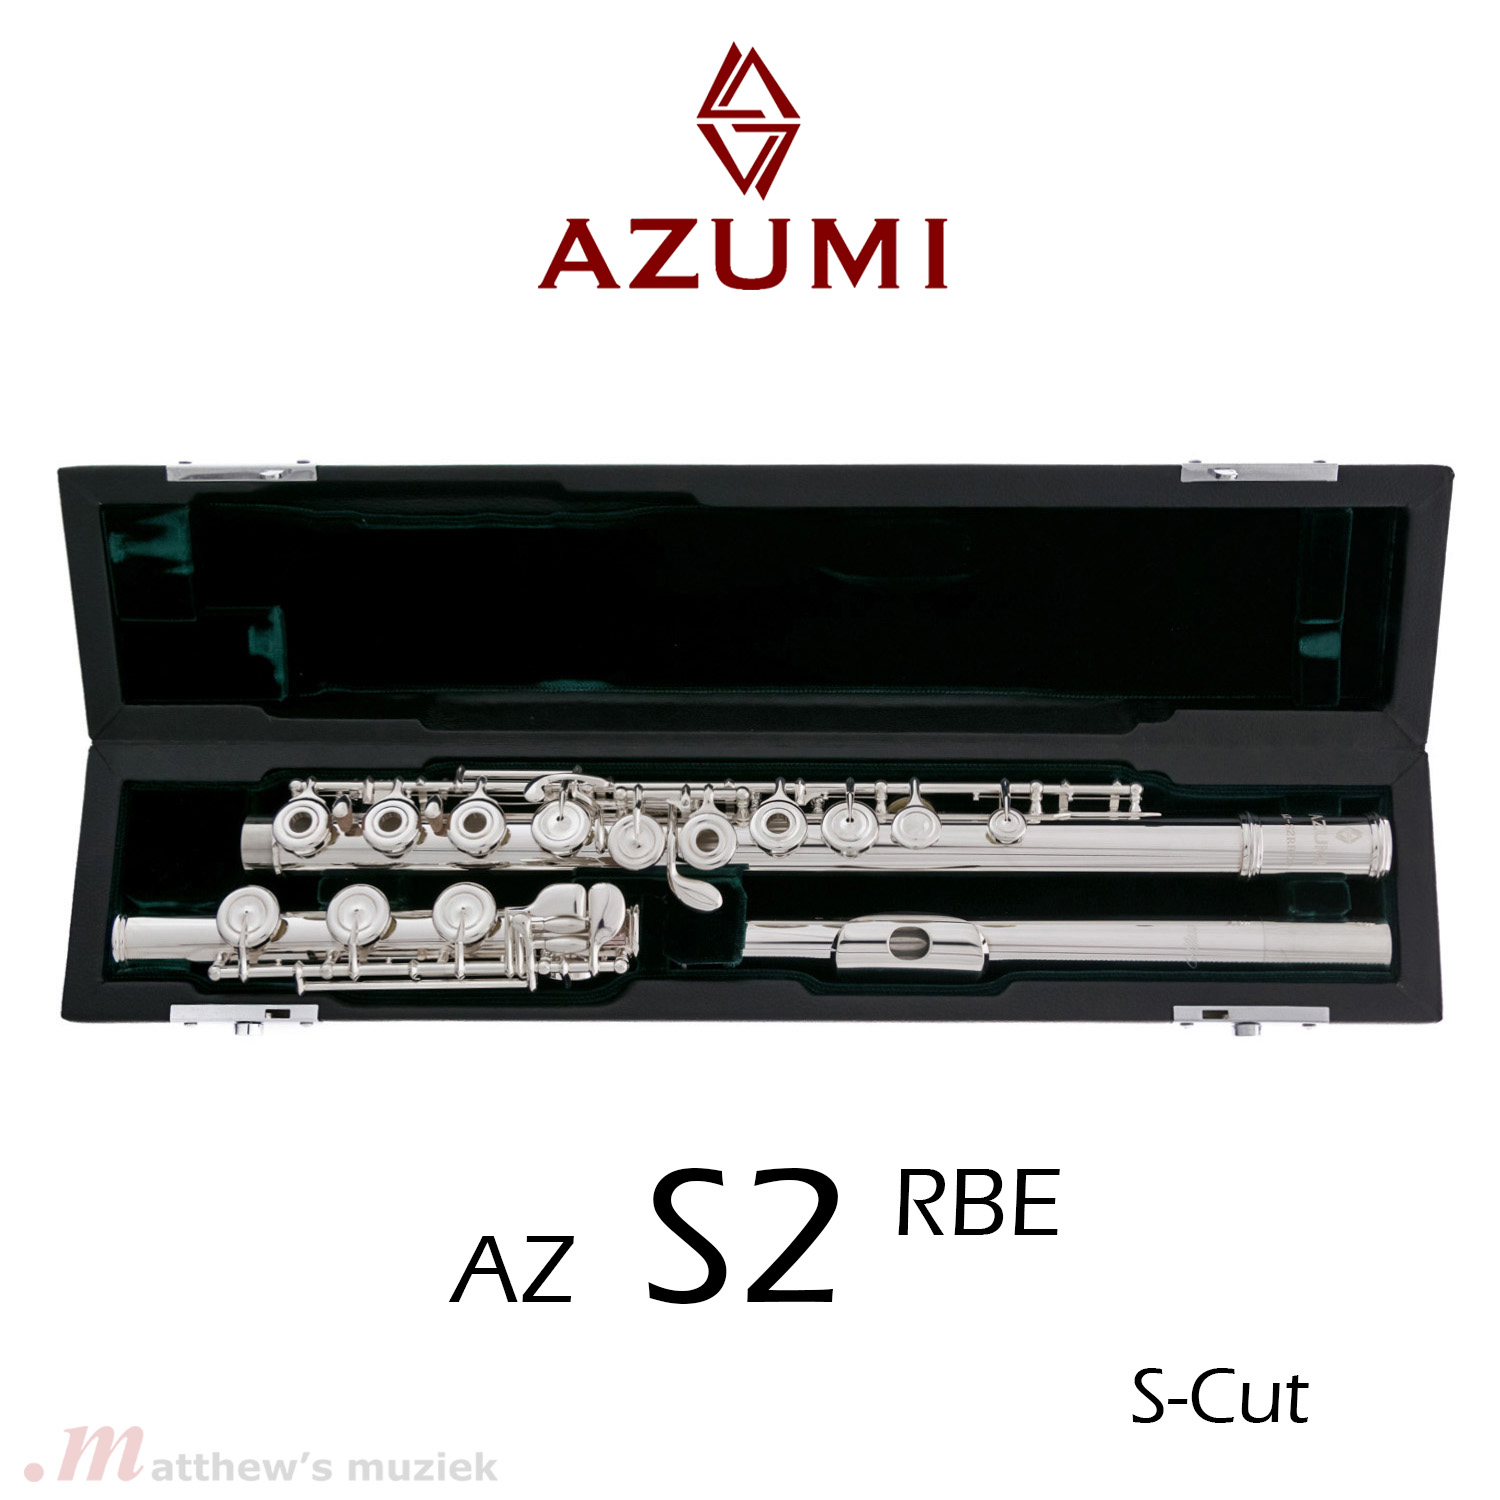 Azumi Querflöte - AZ S2 RBE